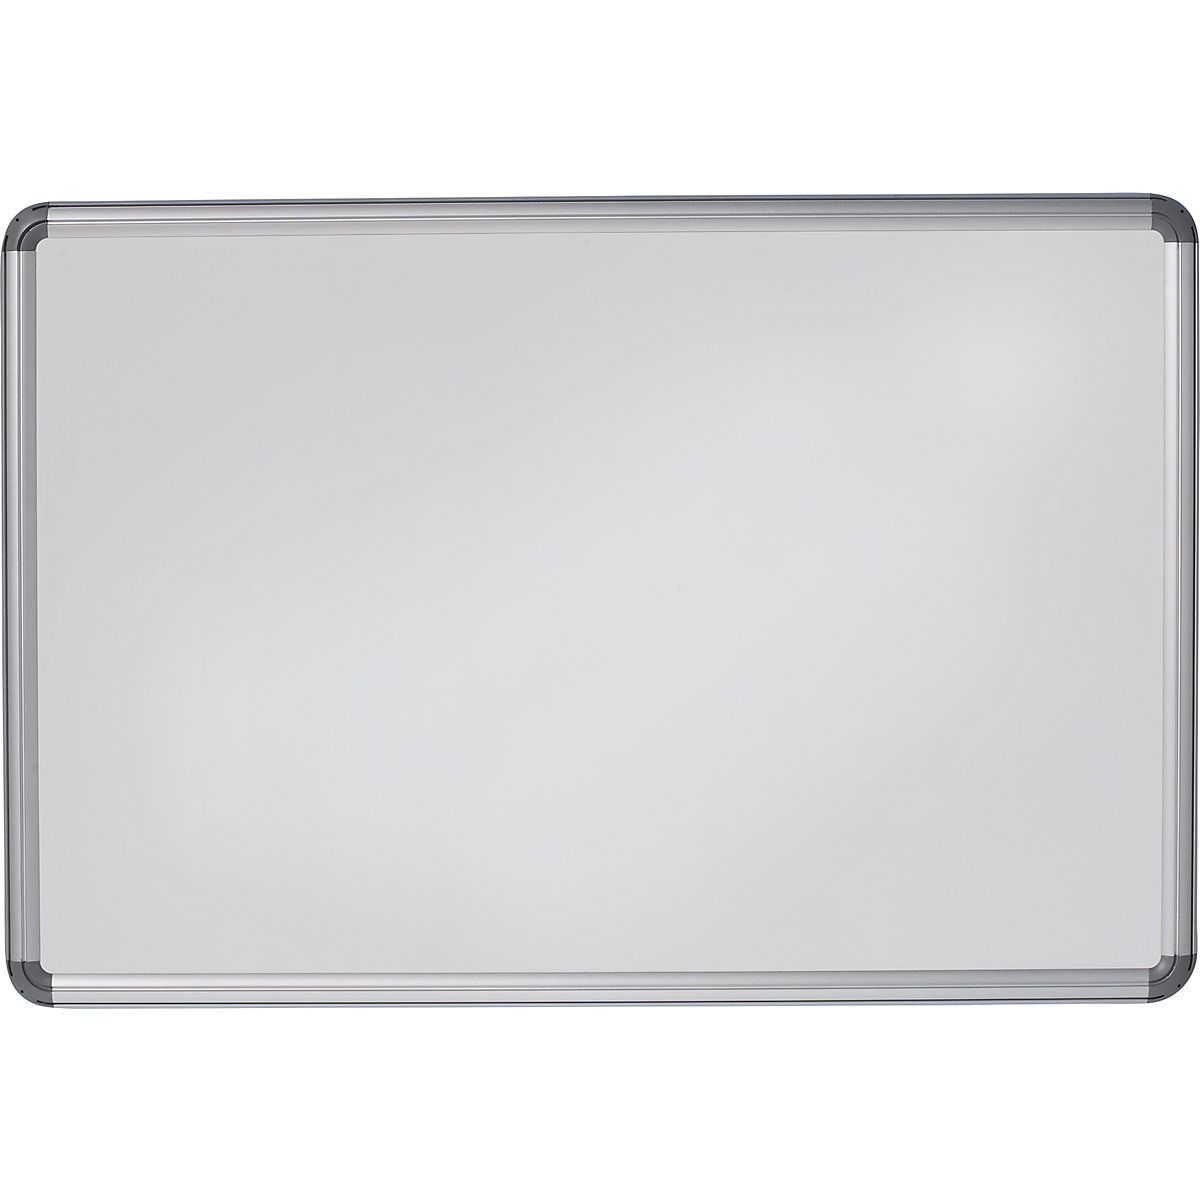 Designerska tablica ścienna – eurokraft pro, blacha stalowa, lakierowana, szer. x wys. 1800 x 1200 mm, biały-15